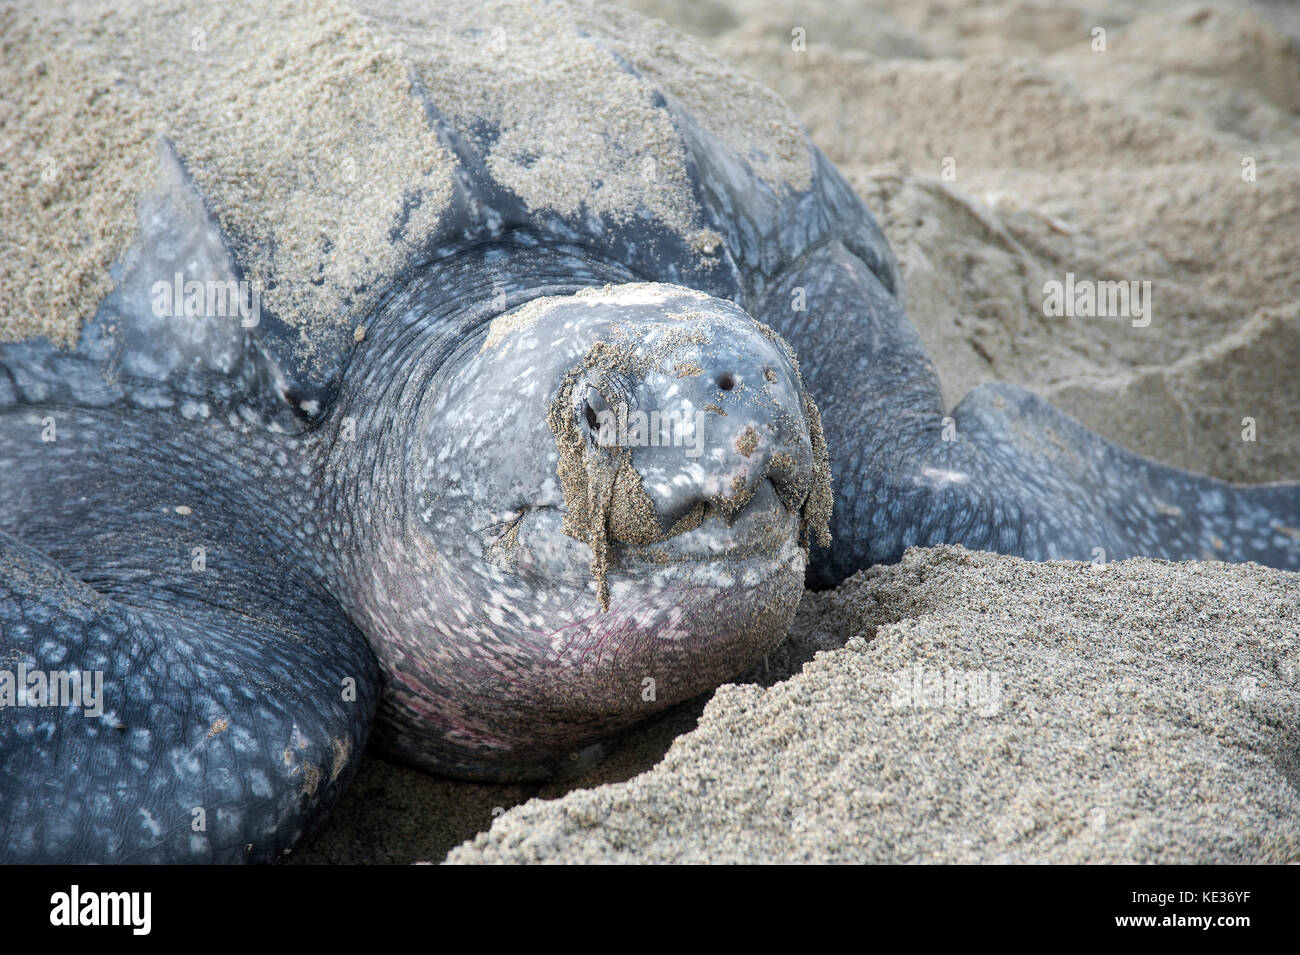 Anidación de tortugas baulas (Dermochelys coriacea), Playa Grande Riviere, Trinidad. Foto de stock